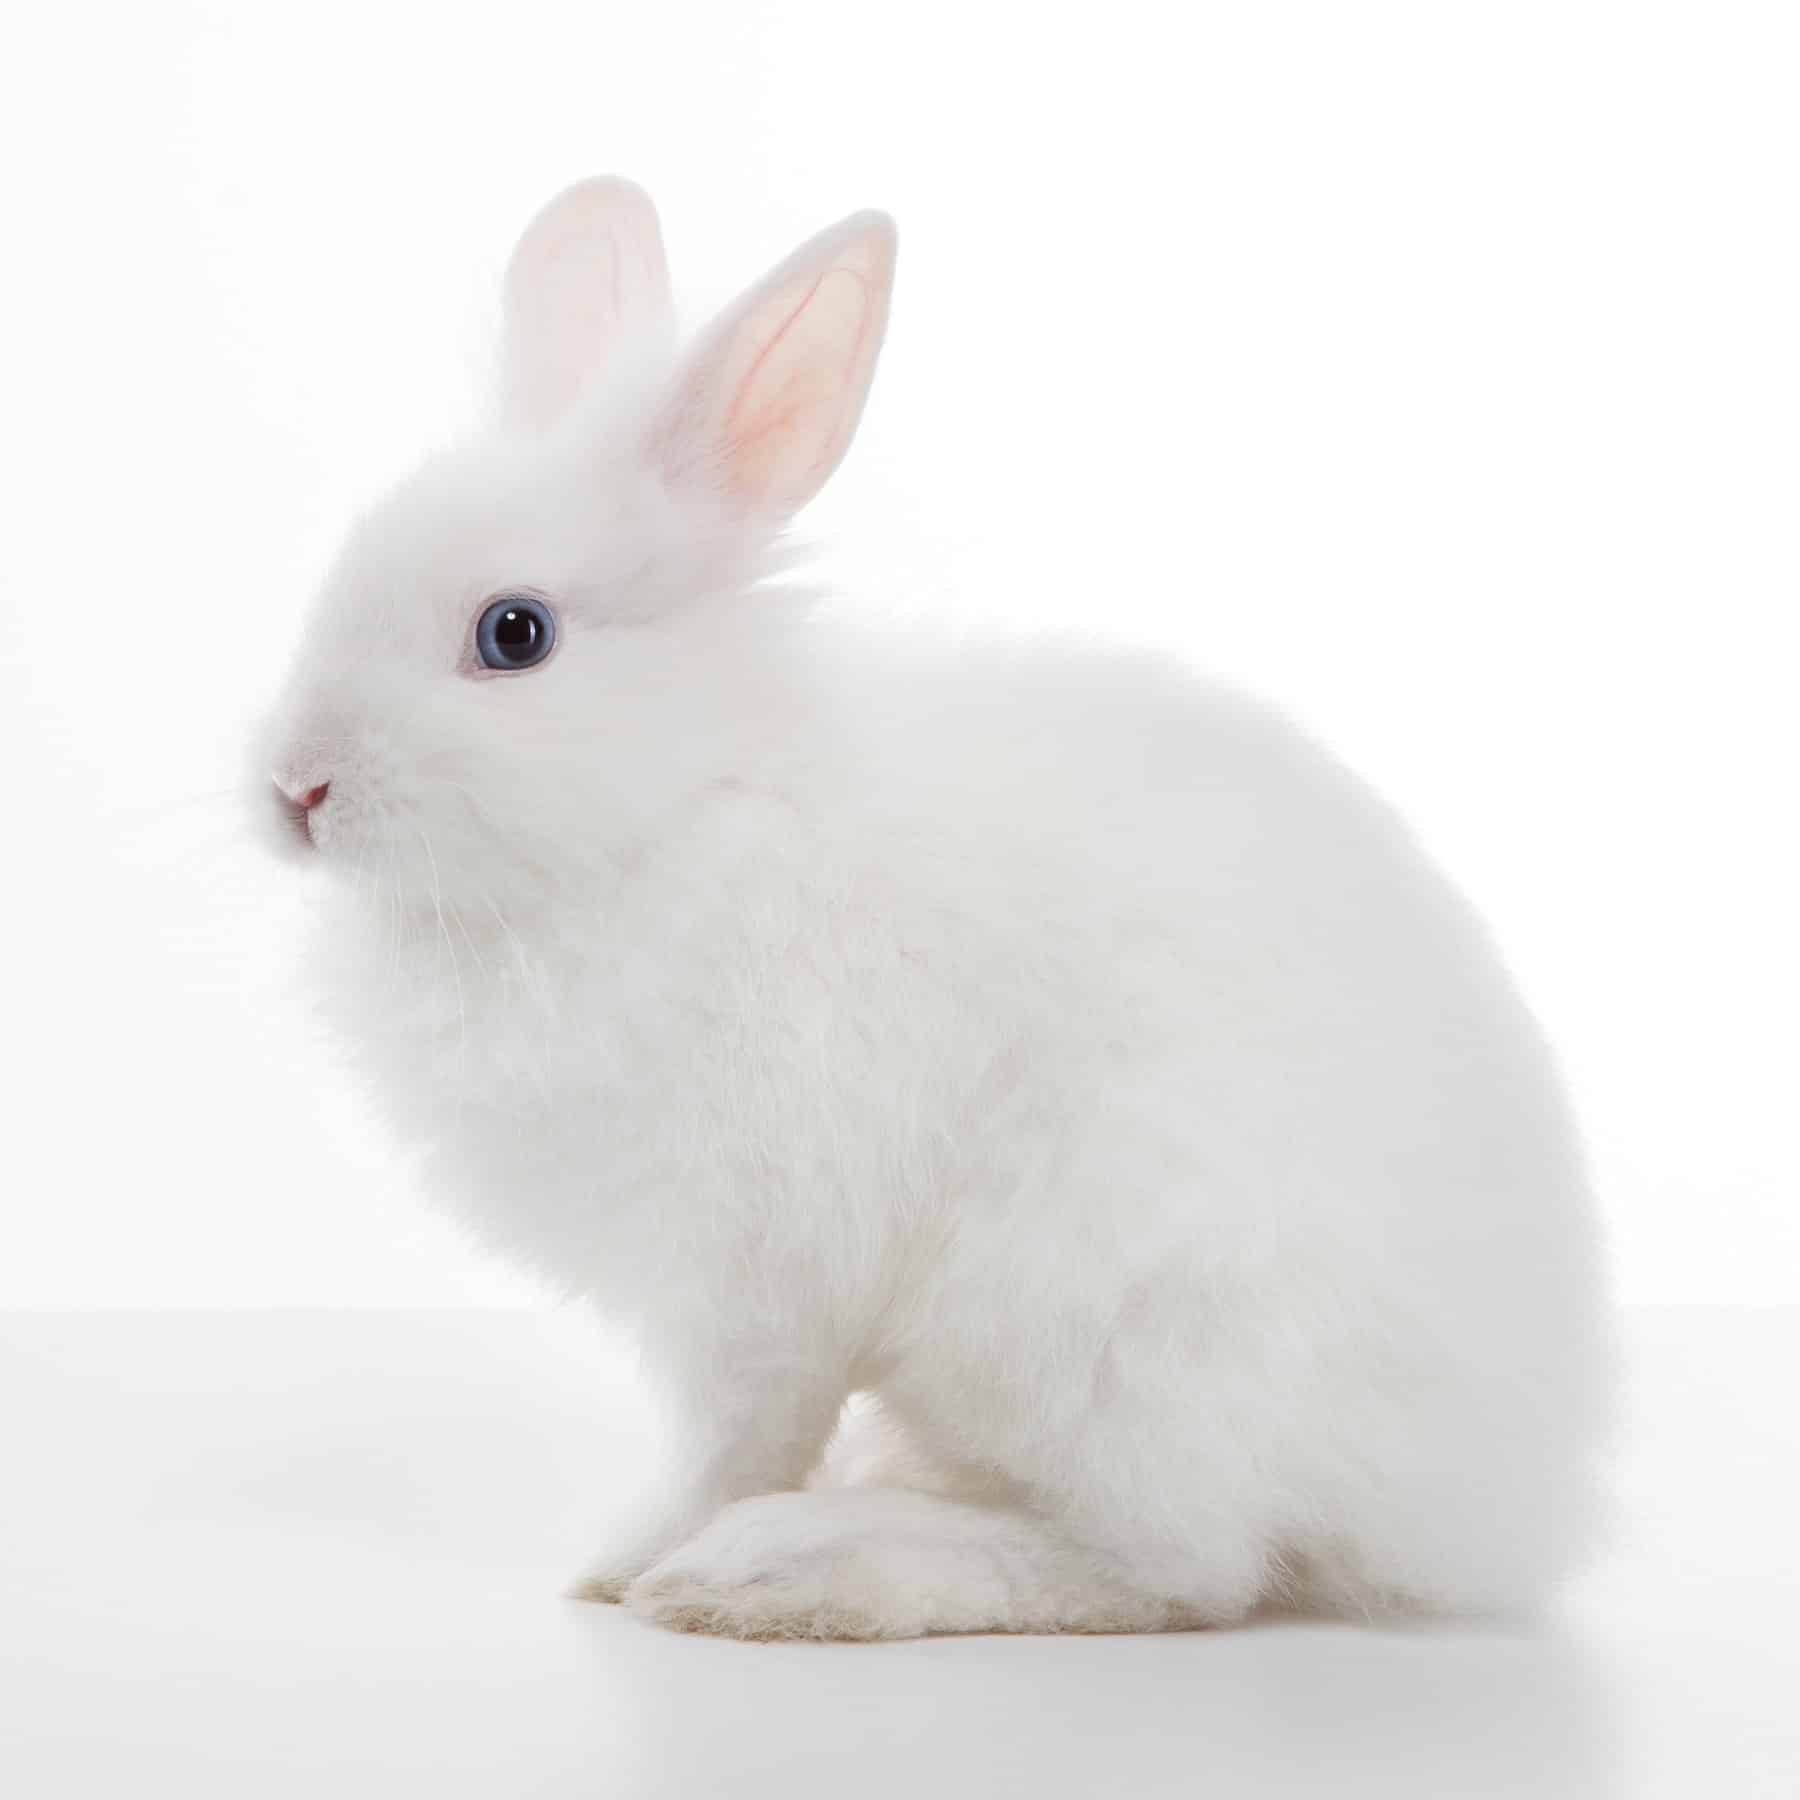 white vienna rabbit on a white background.